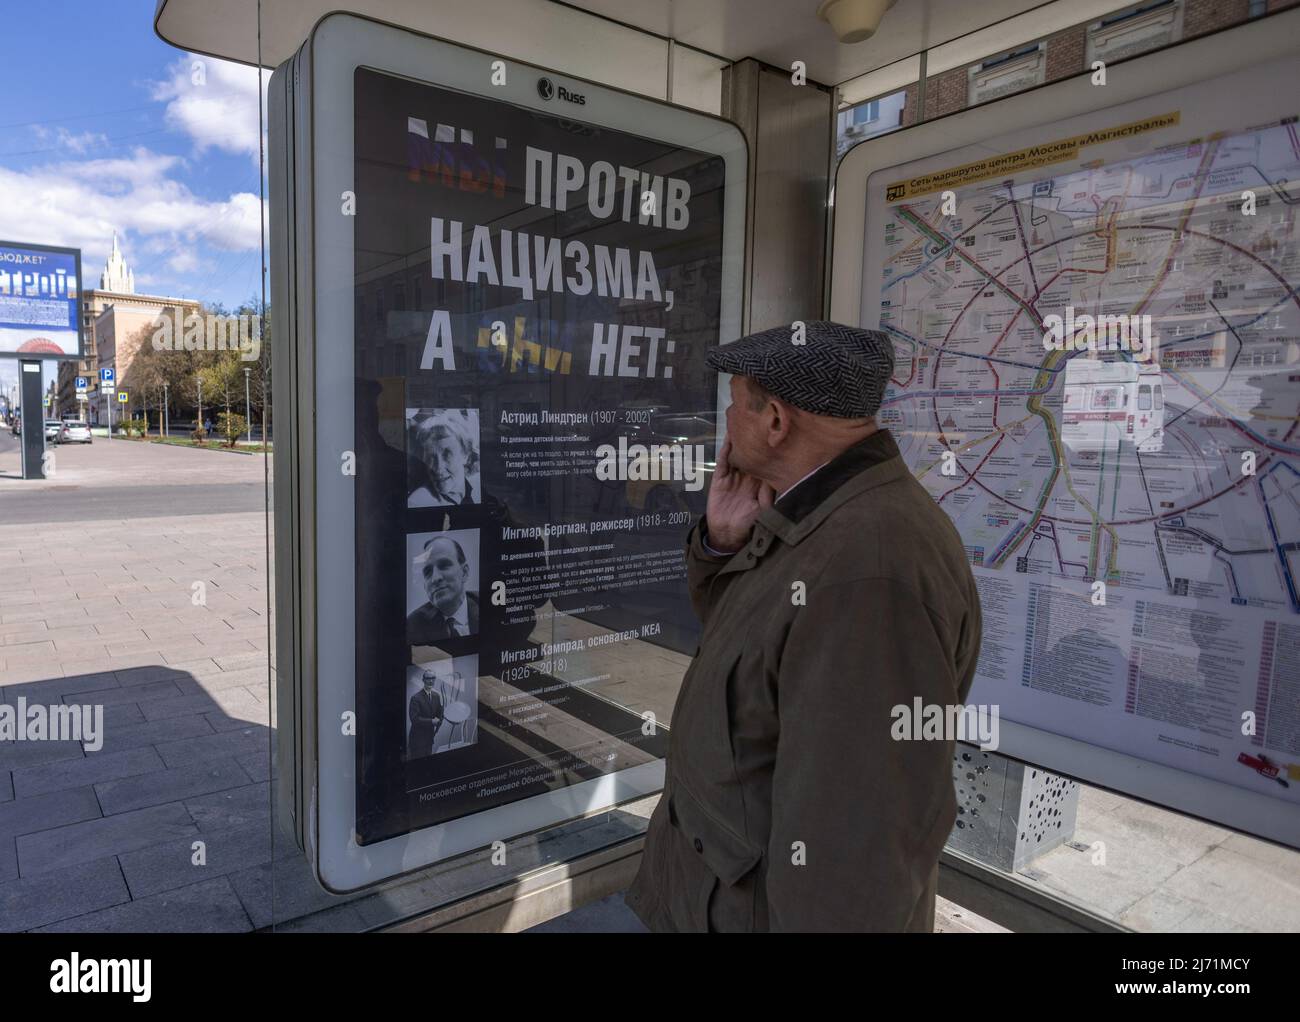 Un hombre mira un cartel con fotografías de la escritora sueca Astrid Lindgren, el director de cine Ingmar Bergman, el fundador de IKEA Ingvar Kamprad, y el mensaje 'Estamos en contra del nazismo, no están' en una parada de autobús en Moscú, Rusia, el 5 de mayo de 2022. FOTÓGRAFO REUTERS/REUTERS Foto de stock